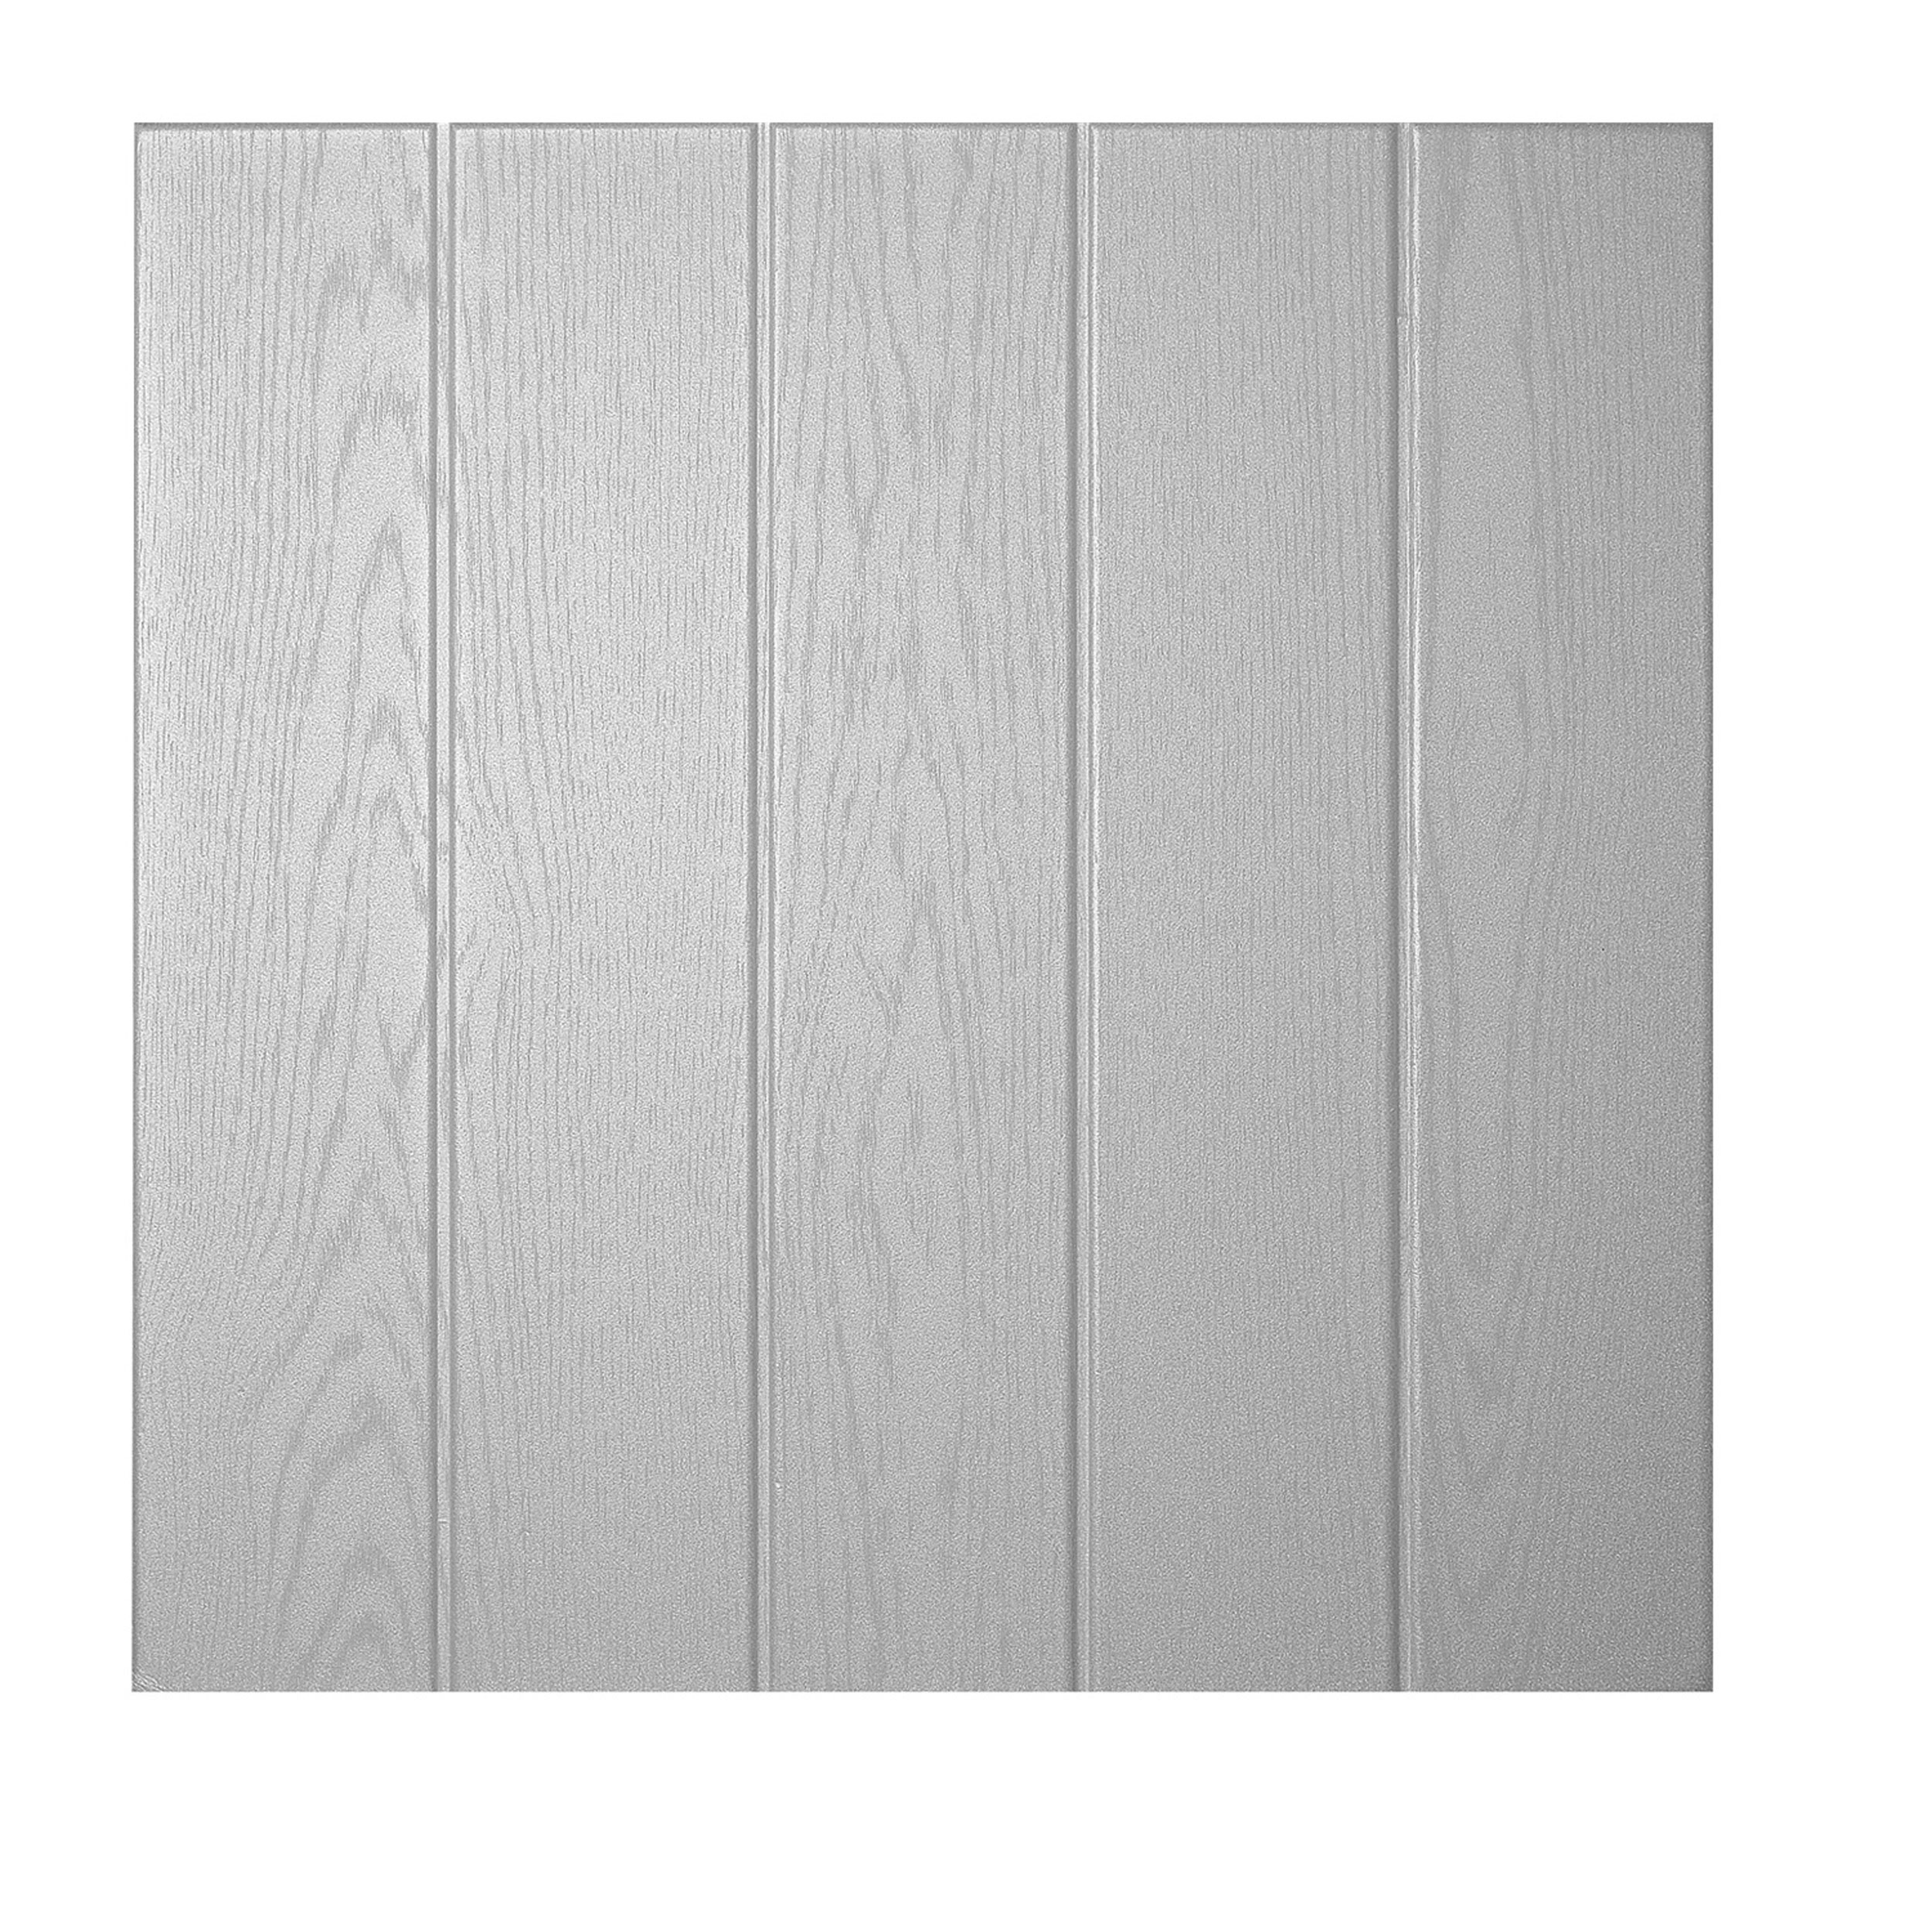 DECOSA Dalle de plafond ATHEN - polystyrène - effet bois - gris clair - 50 x 50 cm